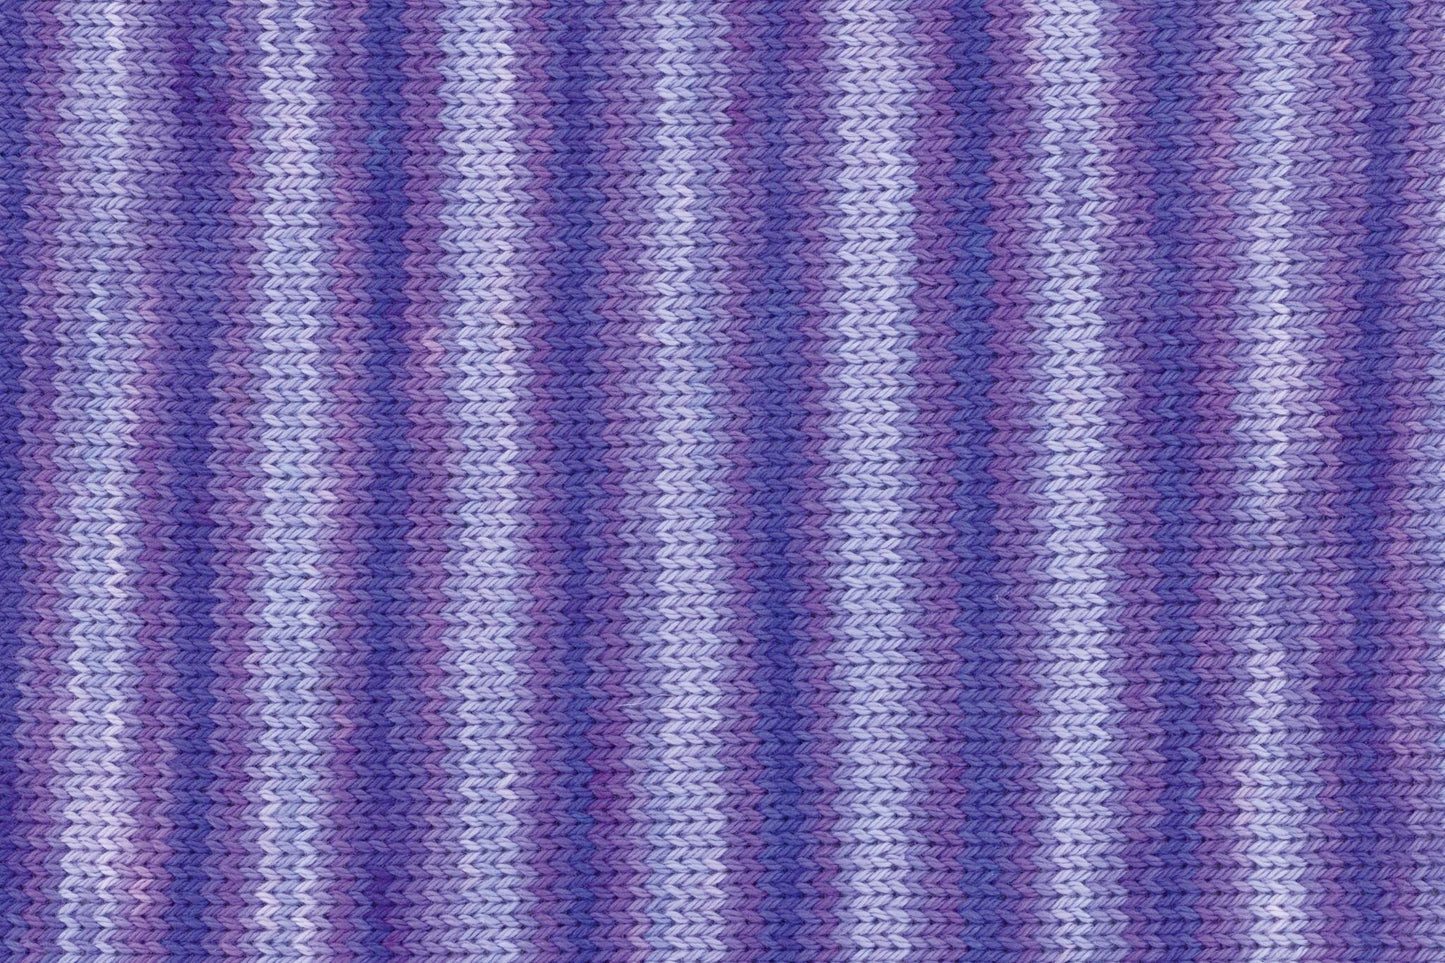 Tropic Cotton 150g, 90287, Farbe 8, lavendel